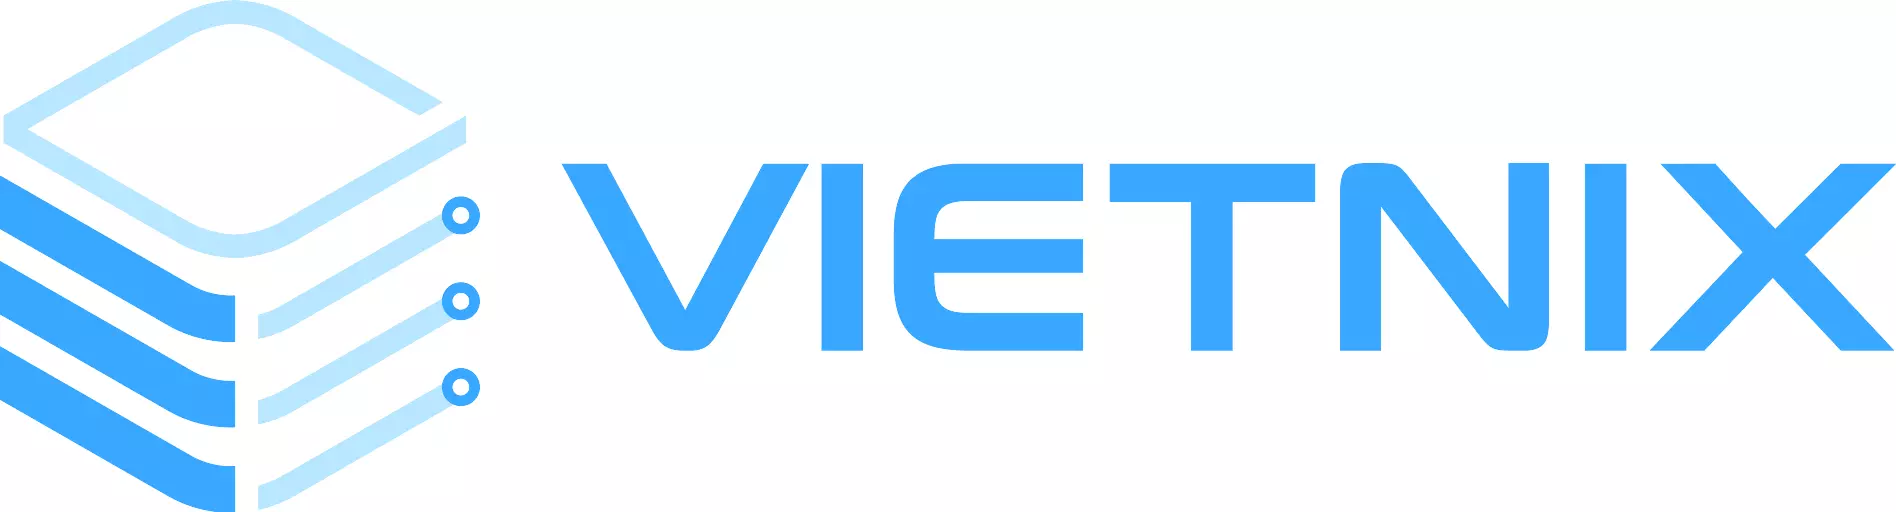 Vietnix - Nhà cung cấp Hosting, VPS có backup tự động